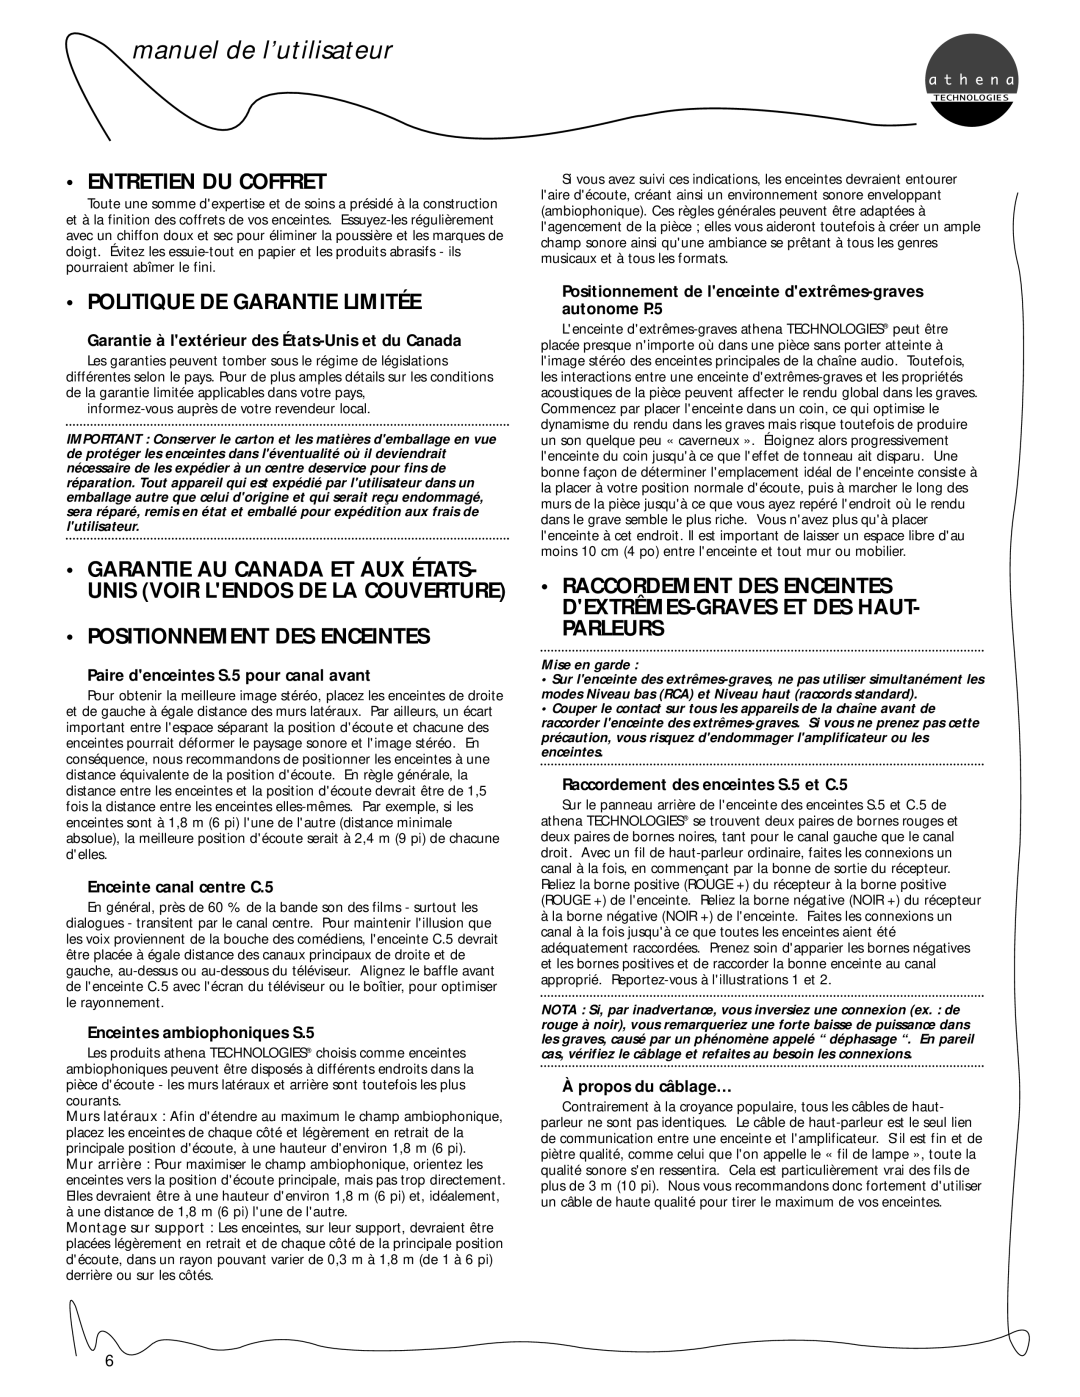 Athena Technologies P.5, C.5, S.5 Entretien Du Coffret, Politique De Garantie Limitée, Positionnement Des Enceintes 